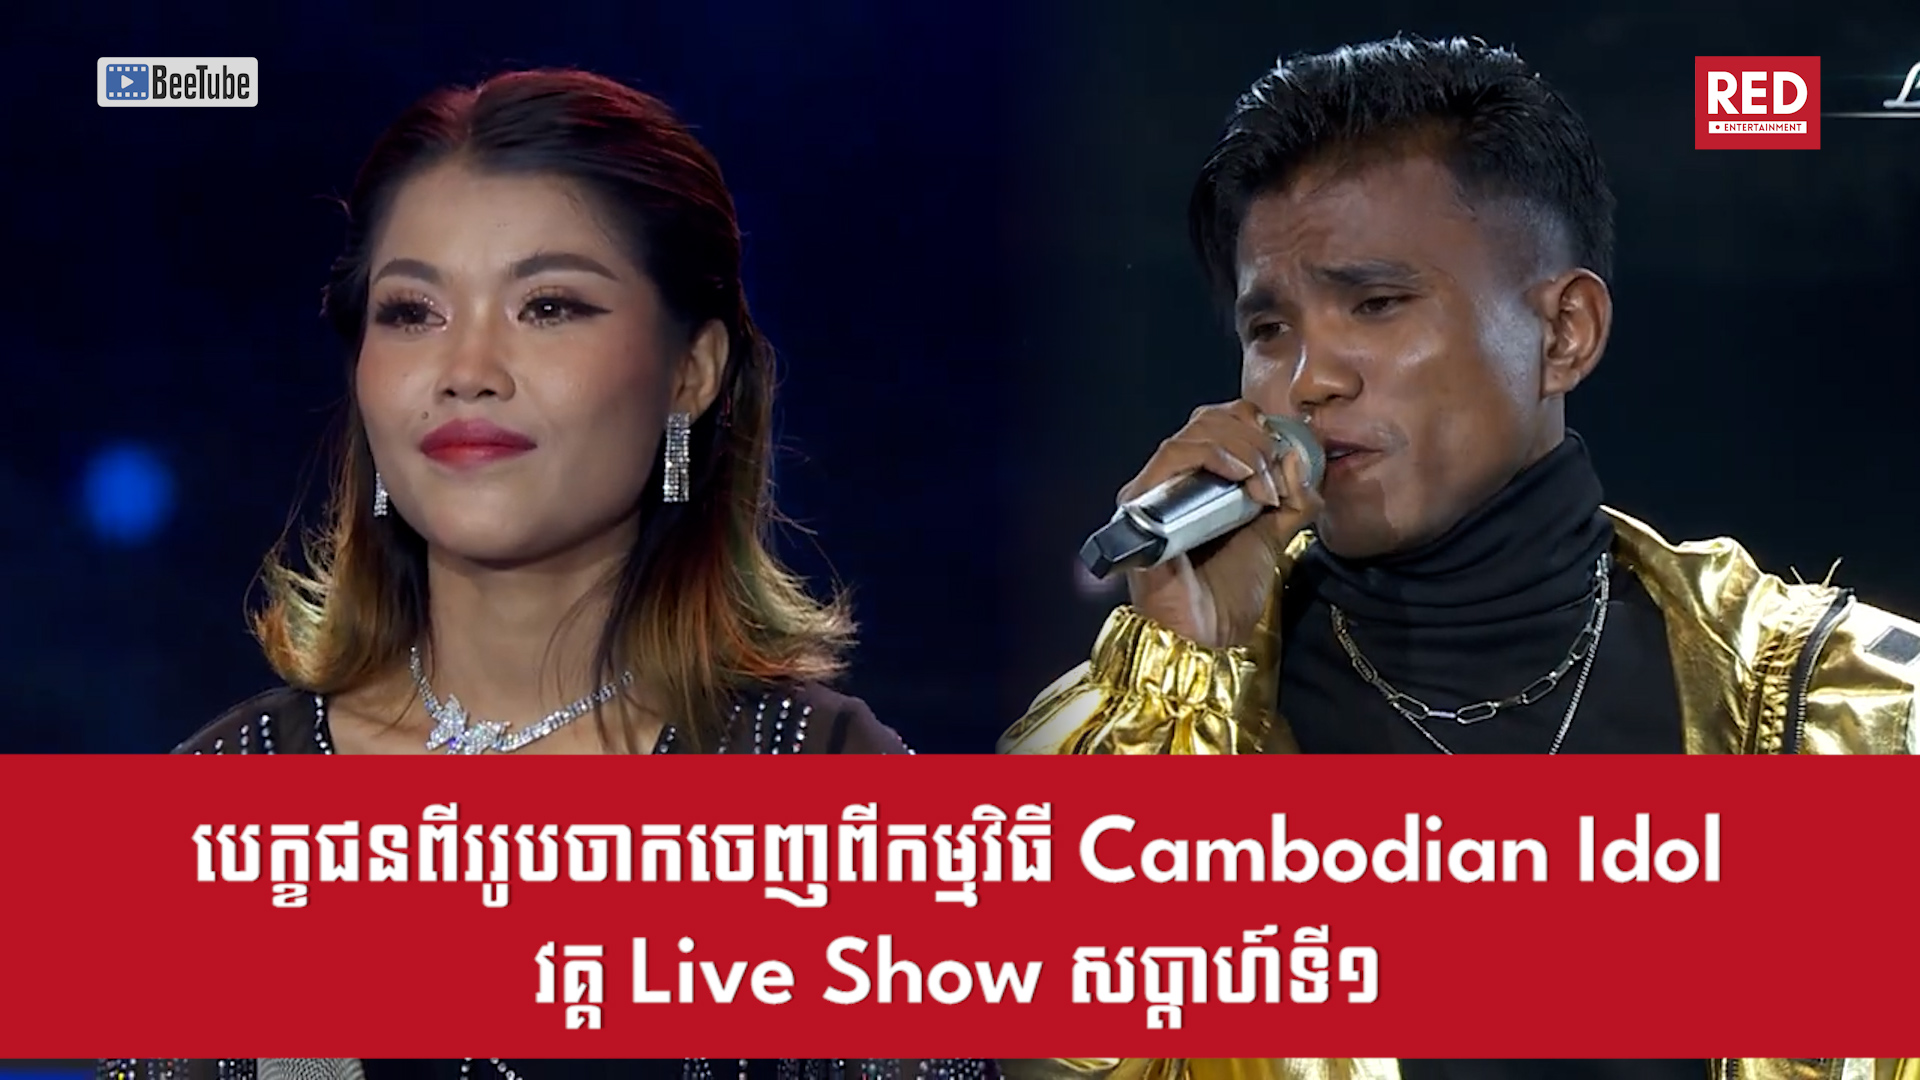 បេក្ខជនពីររូបចាកចេញពីកម្មវិធី Cambodian Idol វគ្គ Live Show សប្តាហ៍ទី១